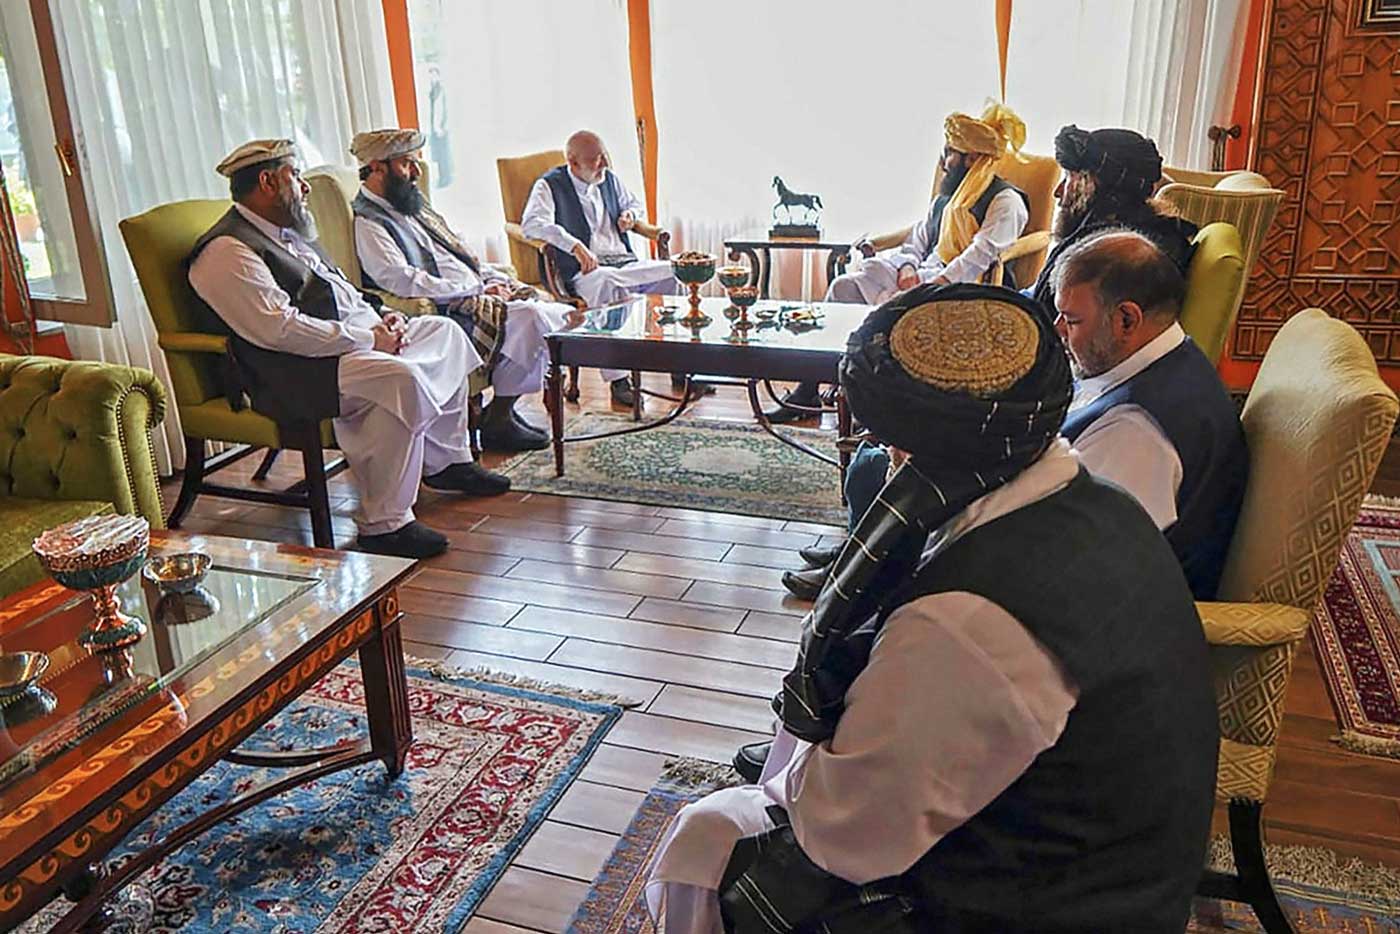 Делегация талибов во главе с руководителем команды переговорщиков, Анасом Хаккани (Anas Haqqani) (в центре справа), встречается с чиновниками бывшего афганского правительства, в том числе с бывшим президентом Хамидом Карзаем (в центре справа), в неопределенном месте в Афганистане в середине августа.